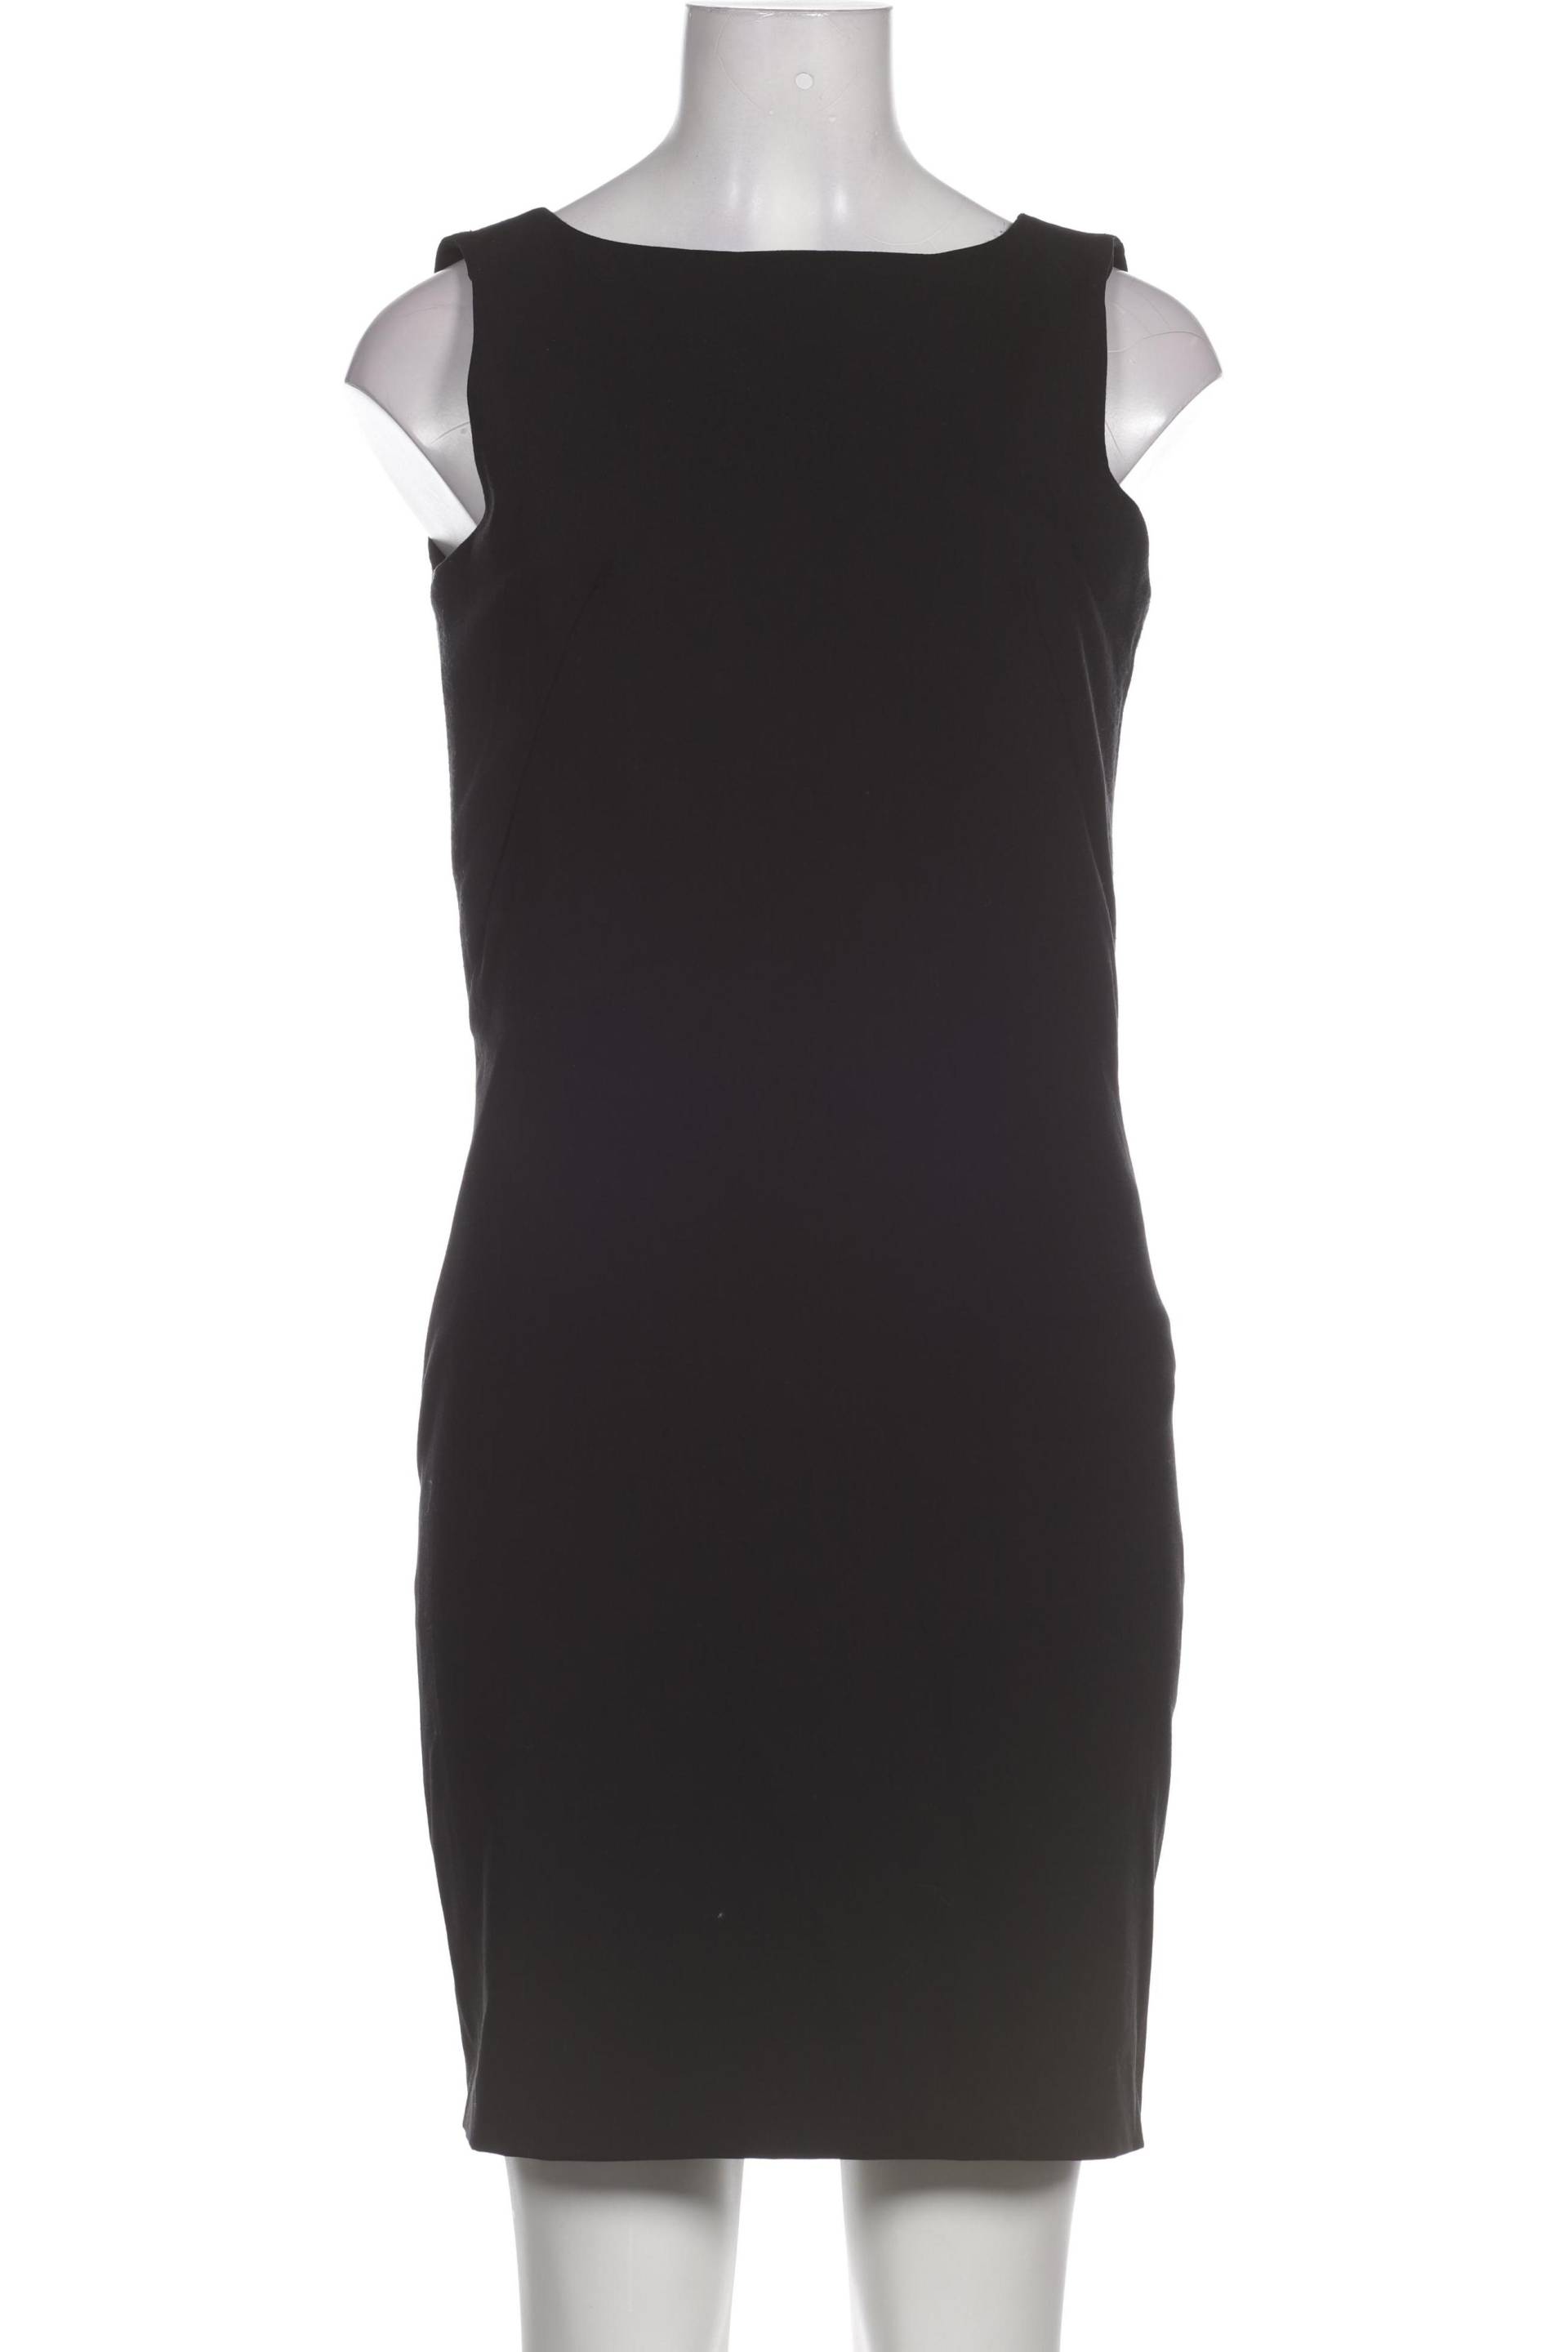 Chalou Damen Kleid, schwarz, Gr. 34 von Chalou